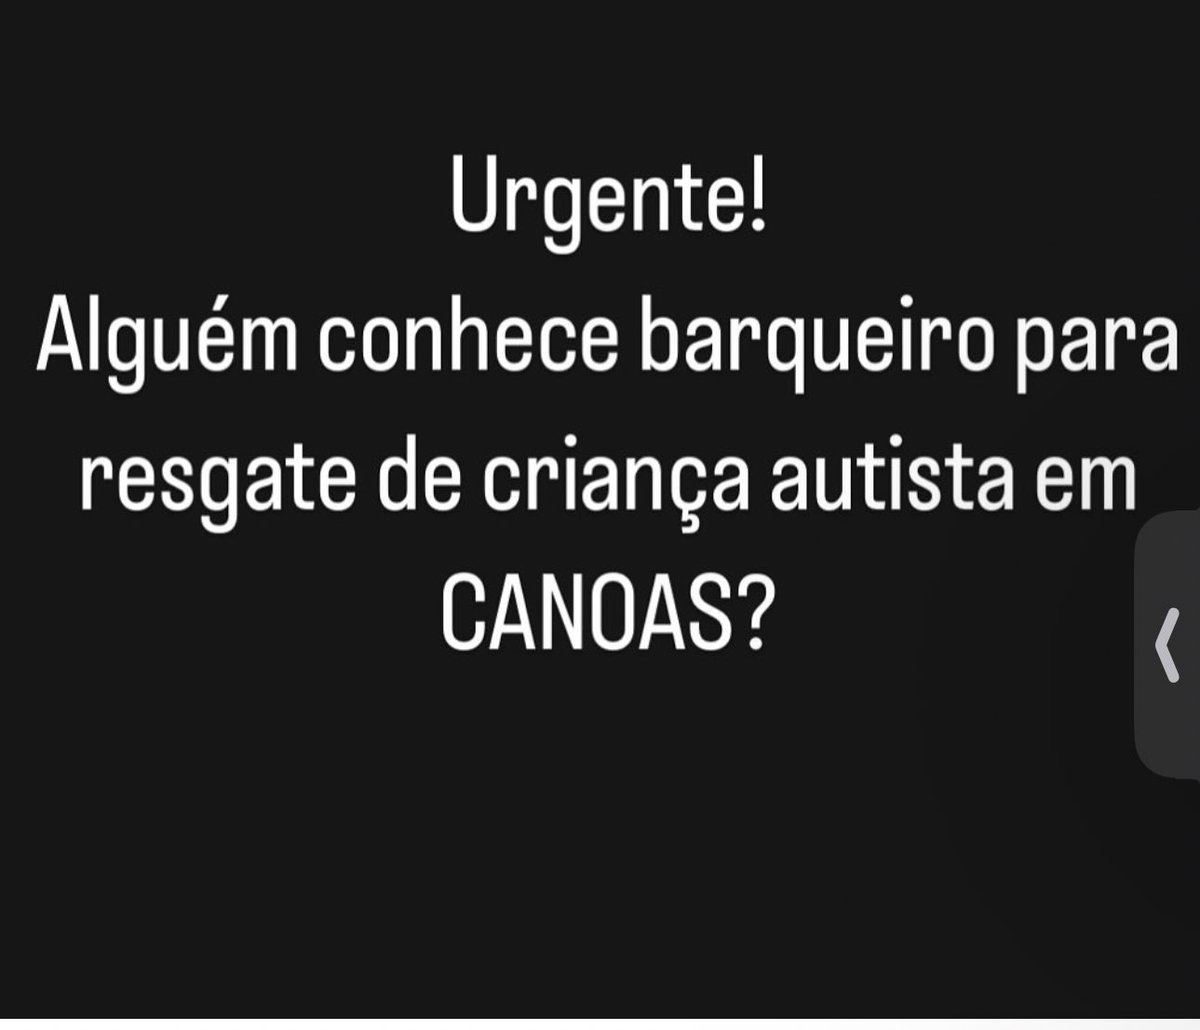 Uma conta de Autismo no Instagram está pedindo ajuda para resgatar uma criança autista nesse endereço:

Rua Pitangueiras 45, Cinco Colônias.

Por favor, compartilhem!